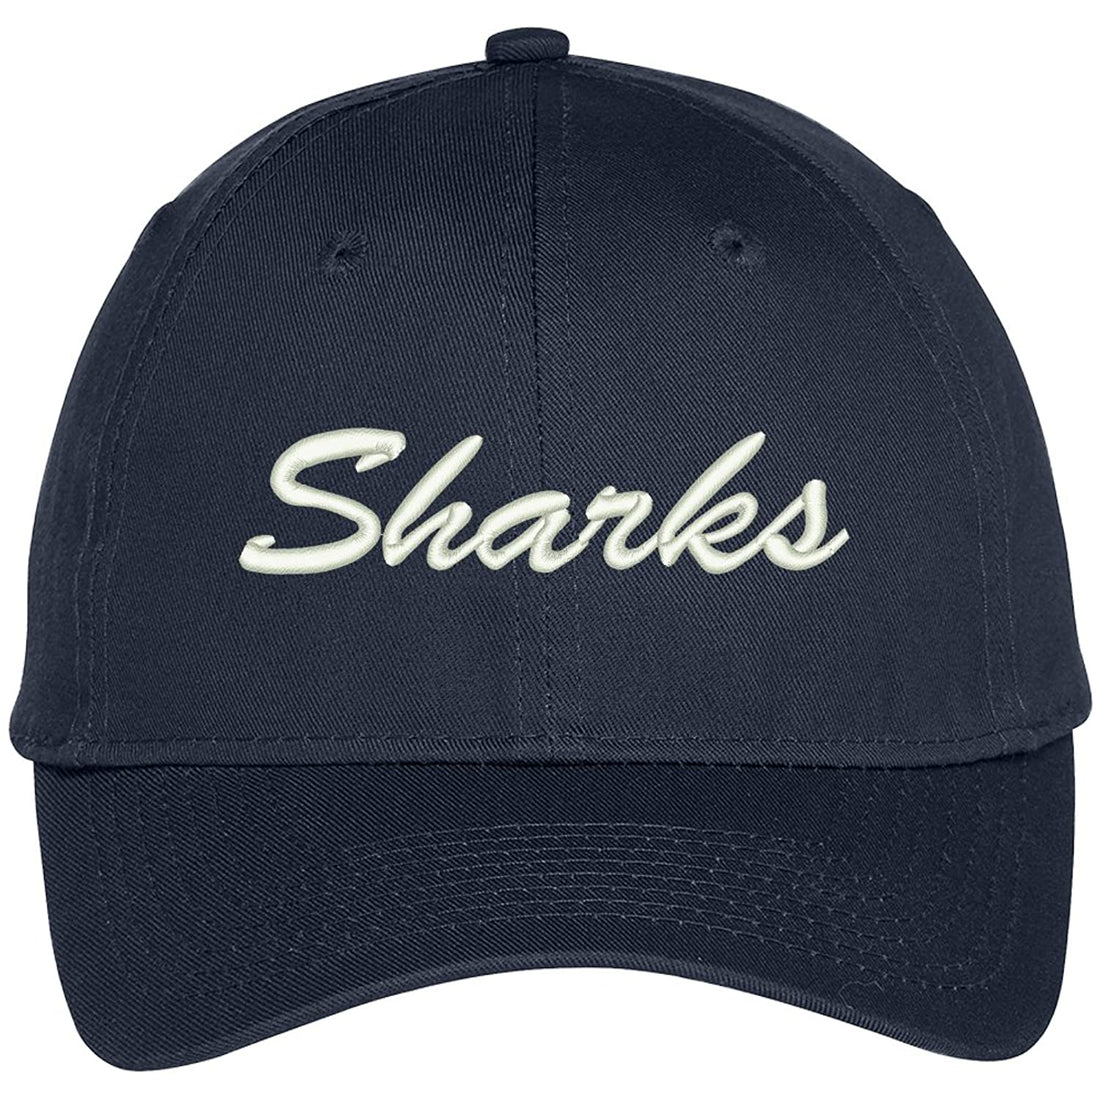 Trendy Apparel Shop Sharks Embroidered Precurved Adjustable Cap